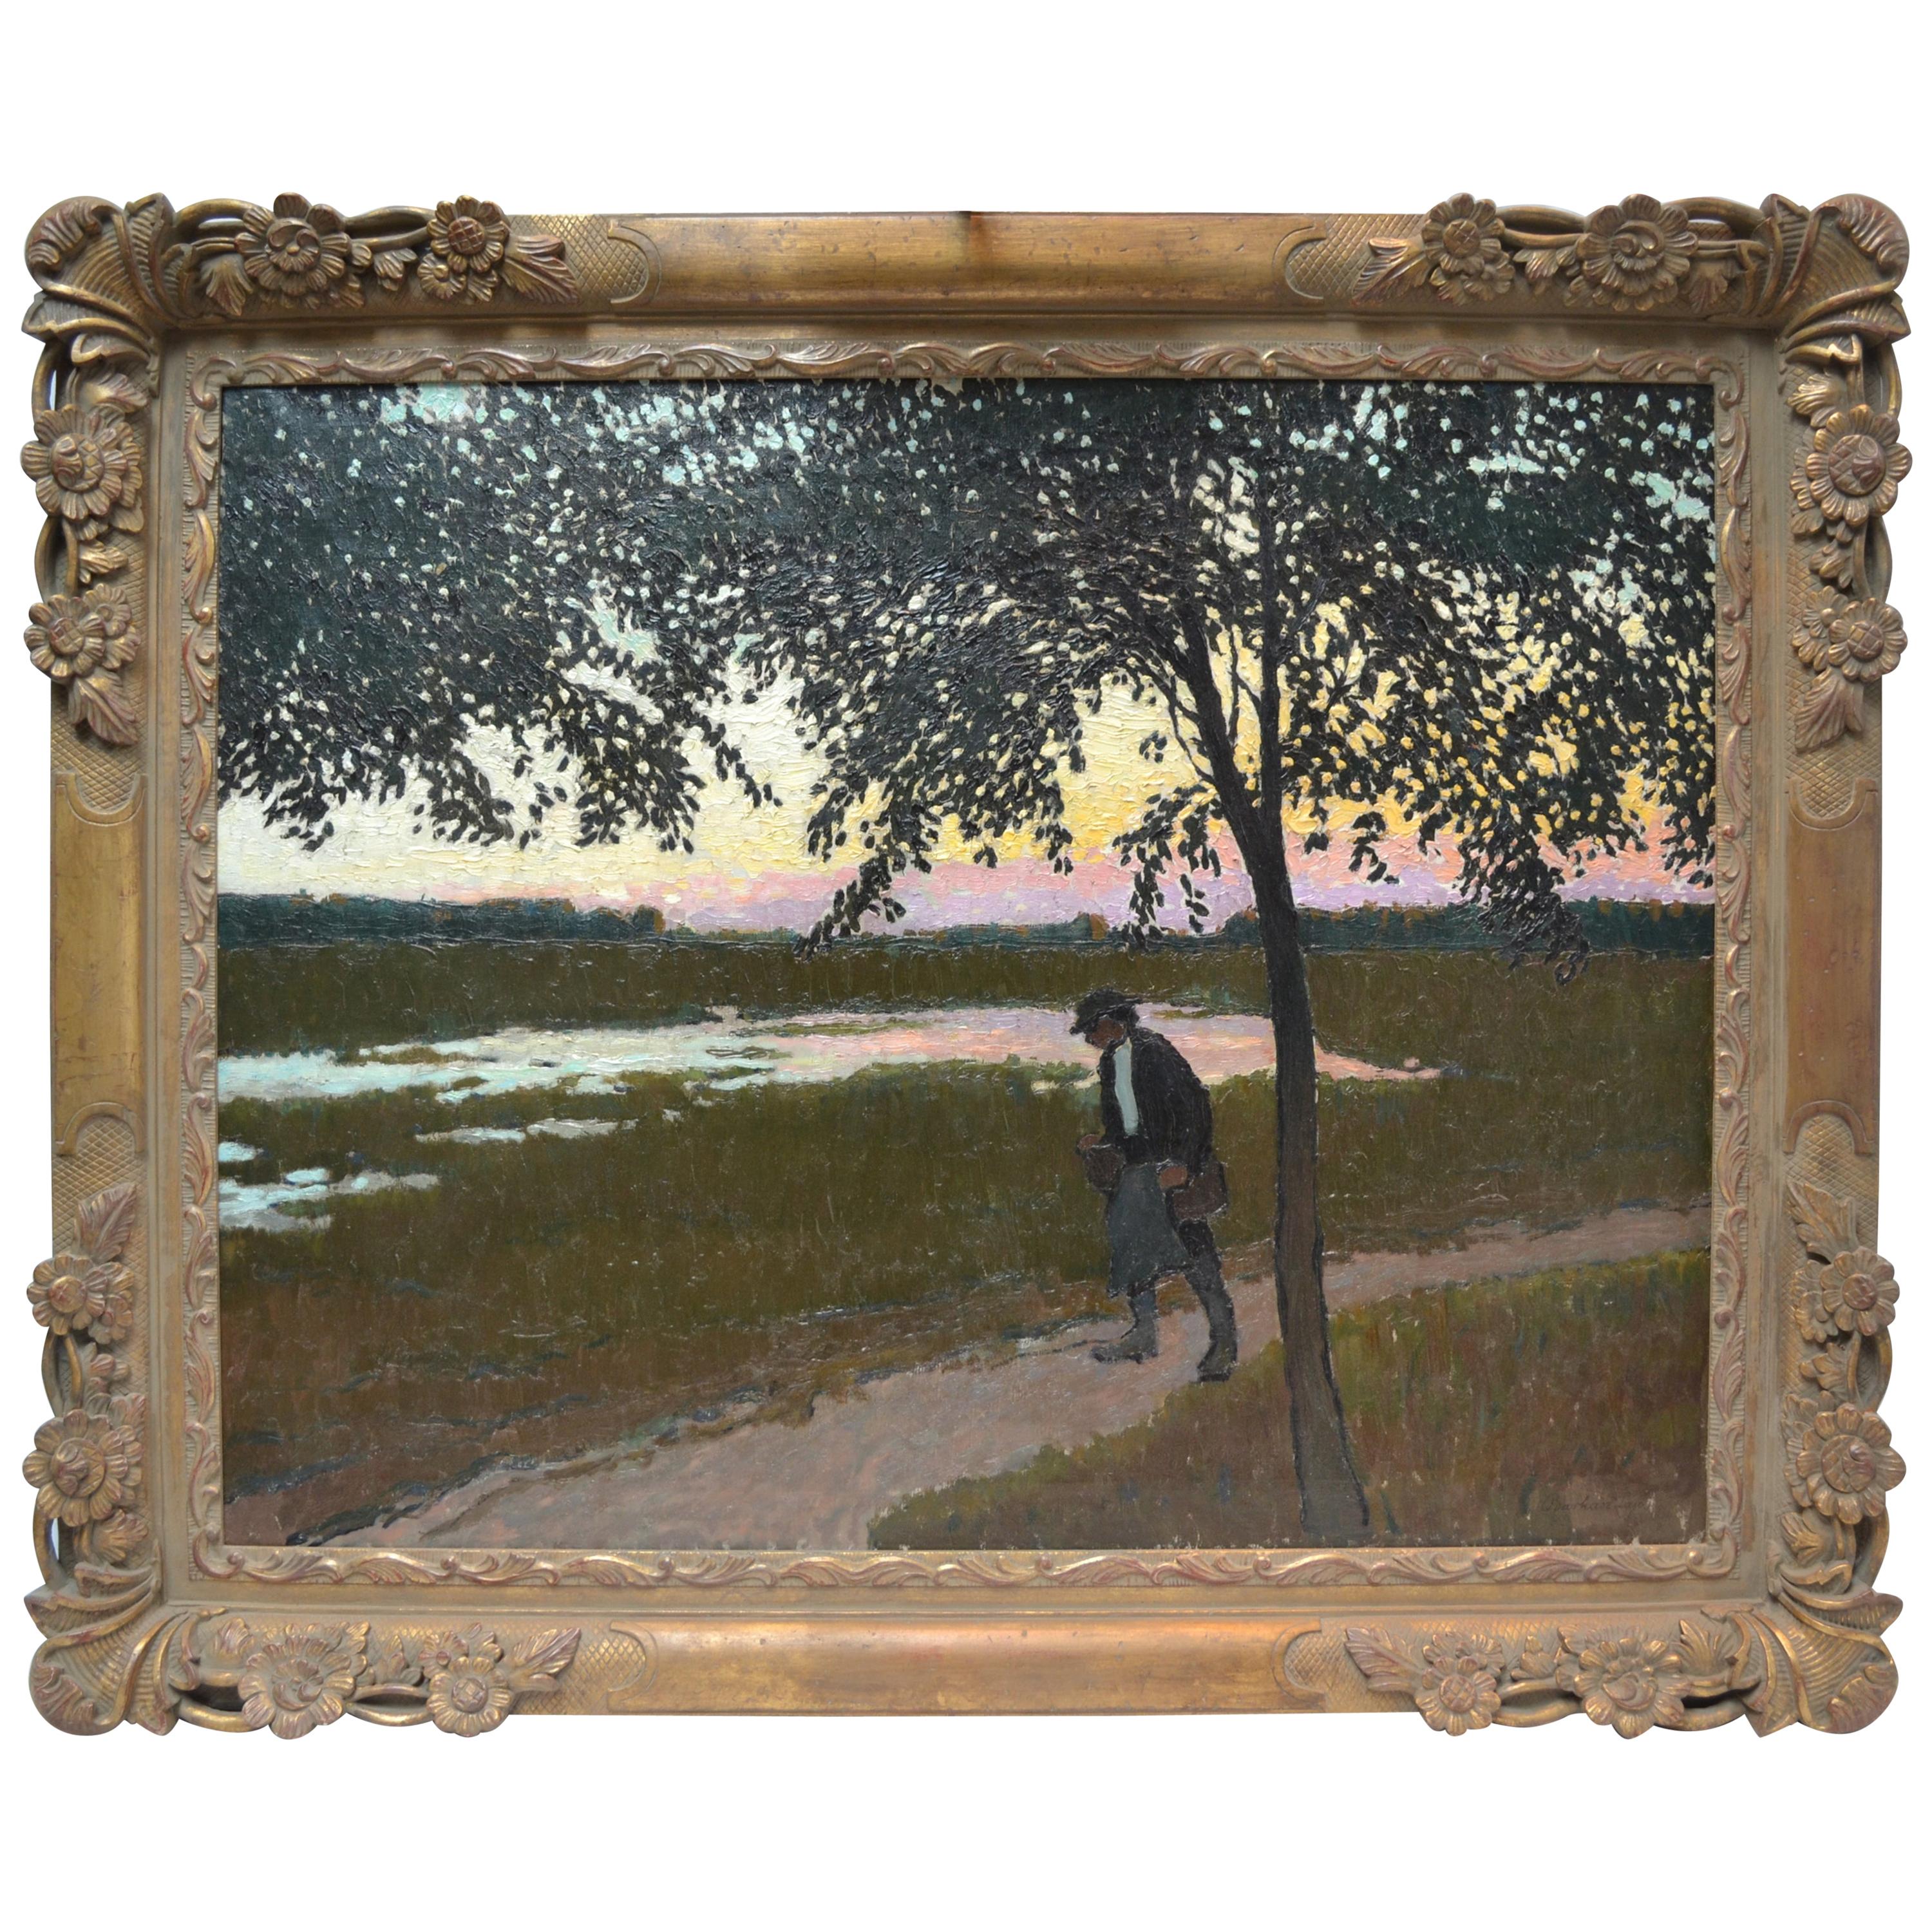 Impressionistische Landschaft des ungarischen Künstlers Barkasz Lajosbarkaz aus dem frühen 20. Jahrhundert